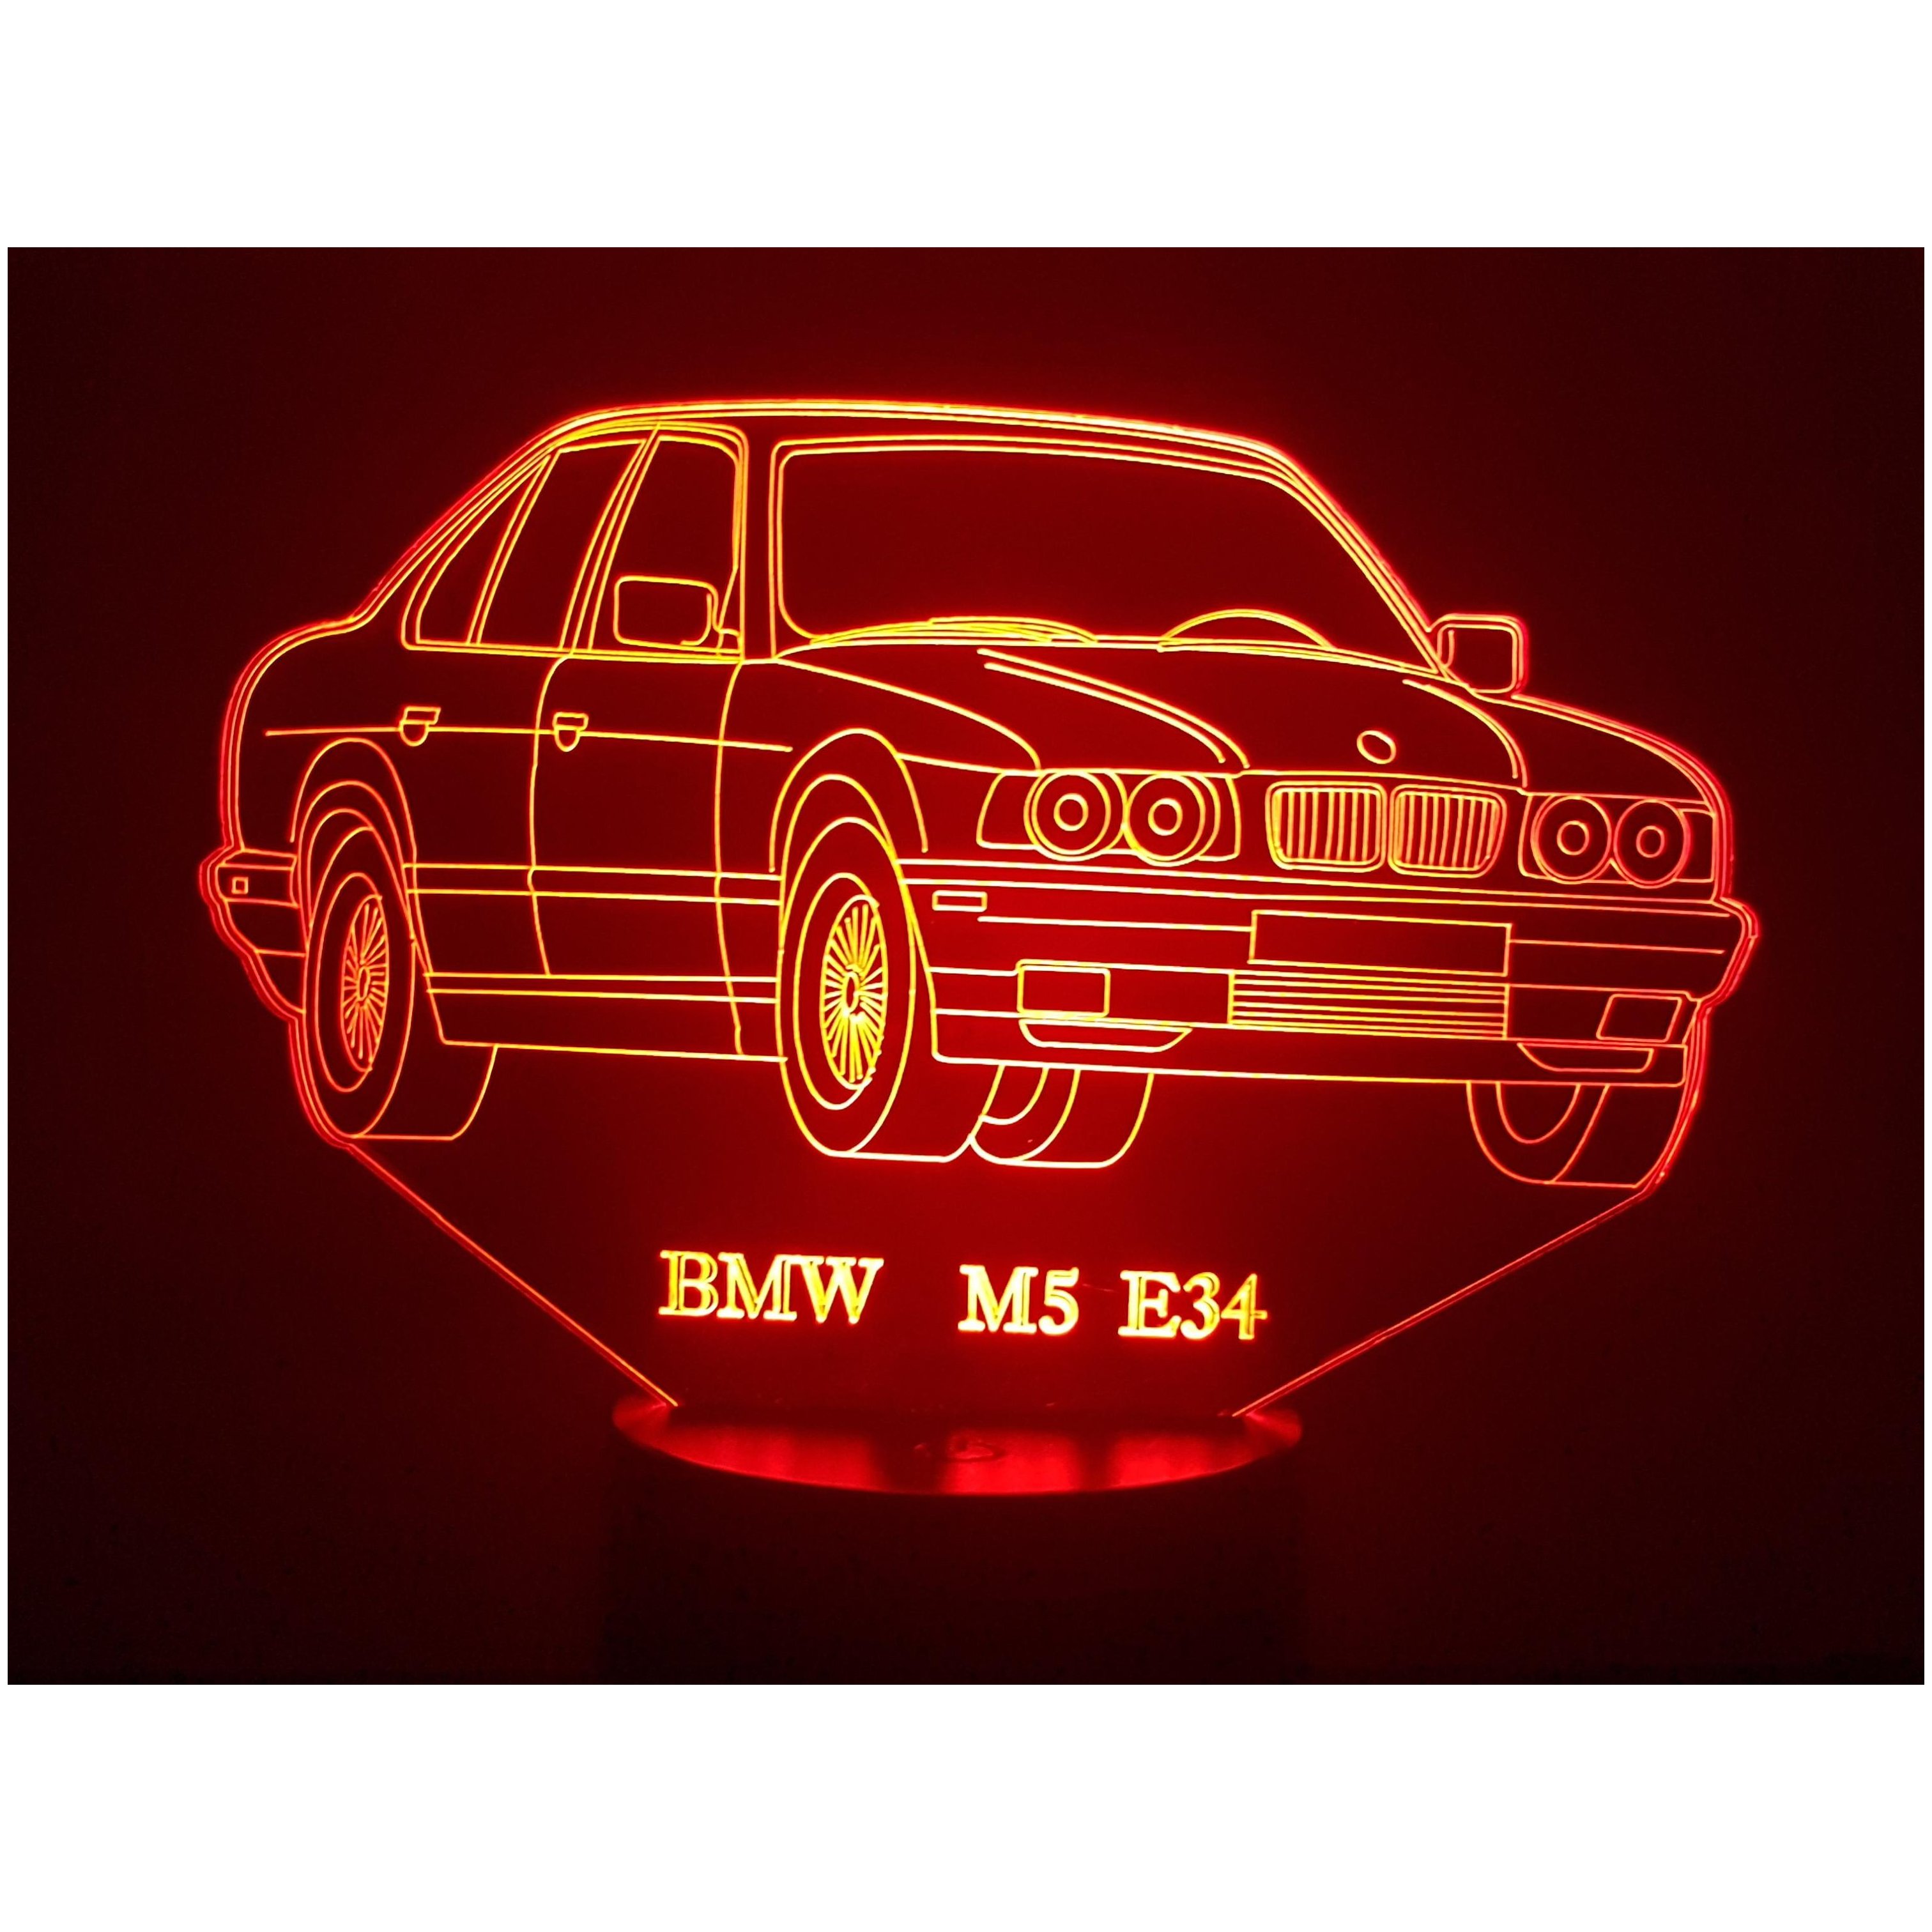 BMW M5 E34 - Lampe d'ambiance 3D à leds, gravure laser sur